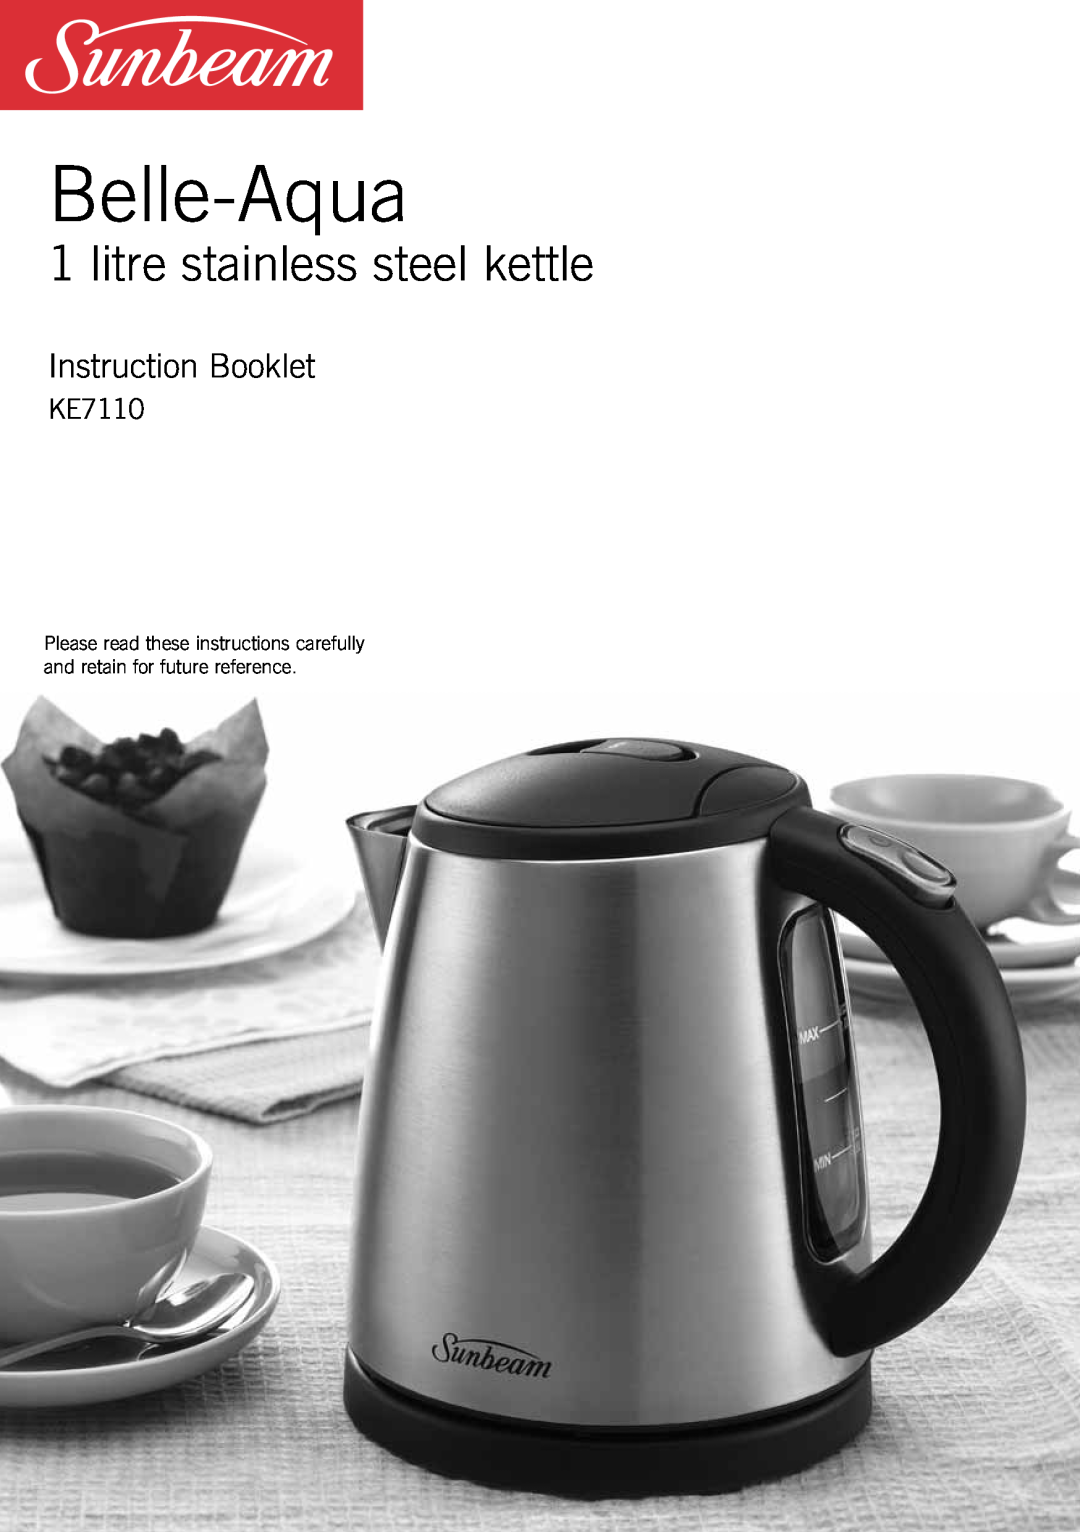 Sunbeam KE7110 manual Belle-Aqua, litre stainless steel kettle, Instruction Booklet 